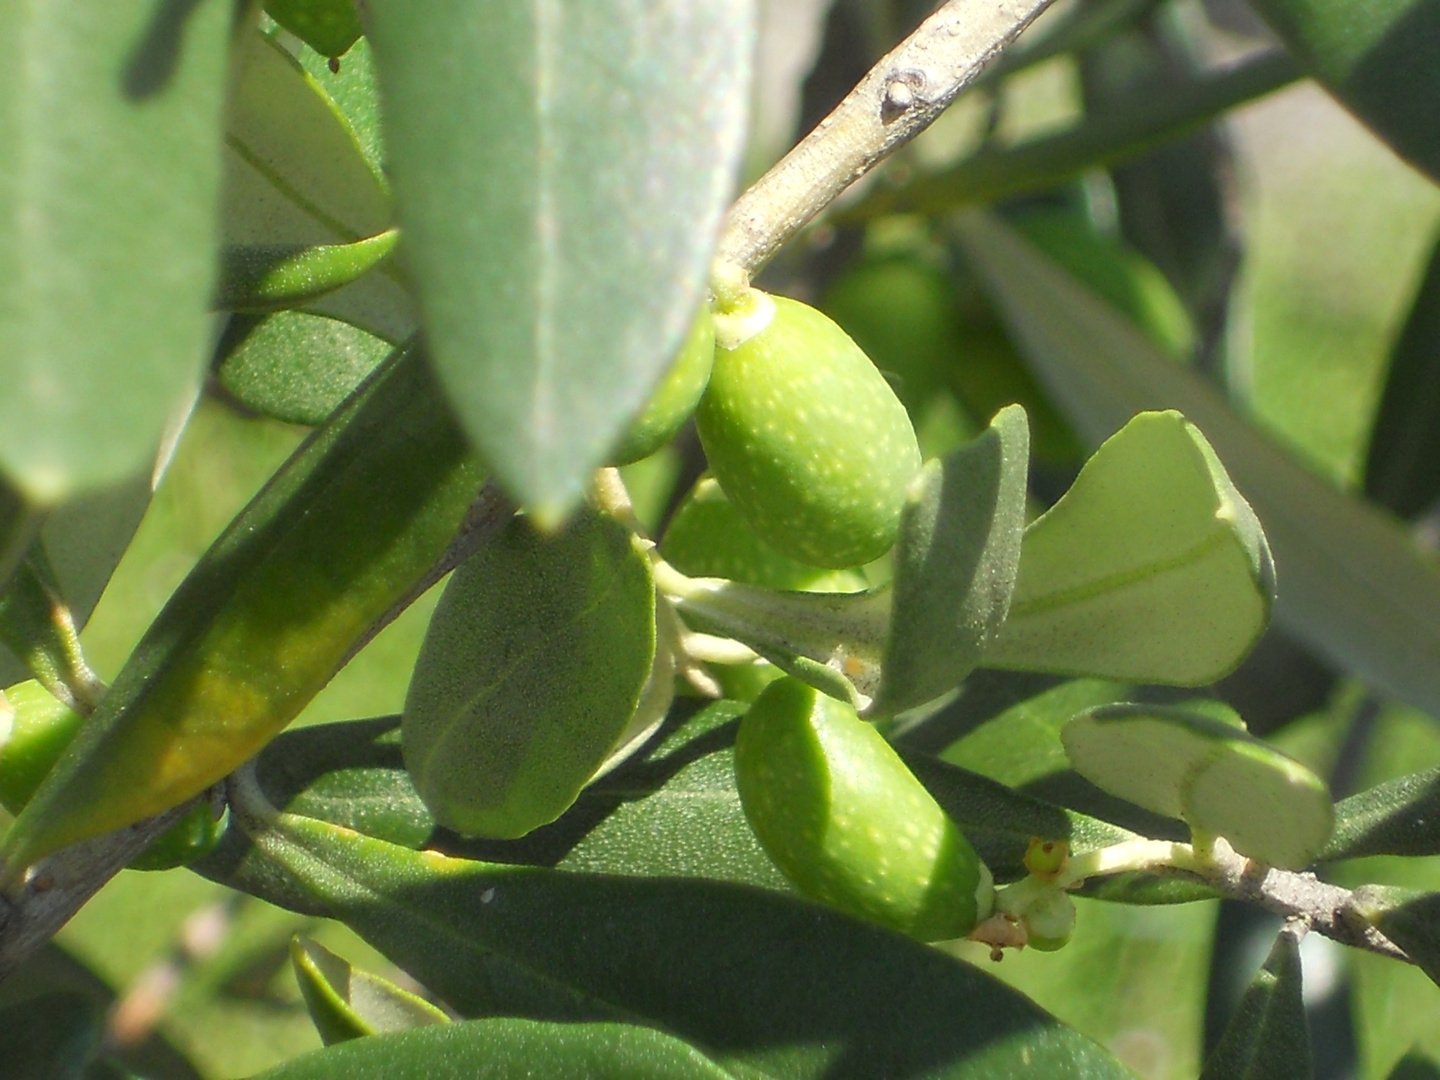 noch nicht reife Oliven am Gardasee